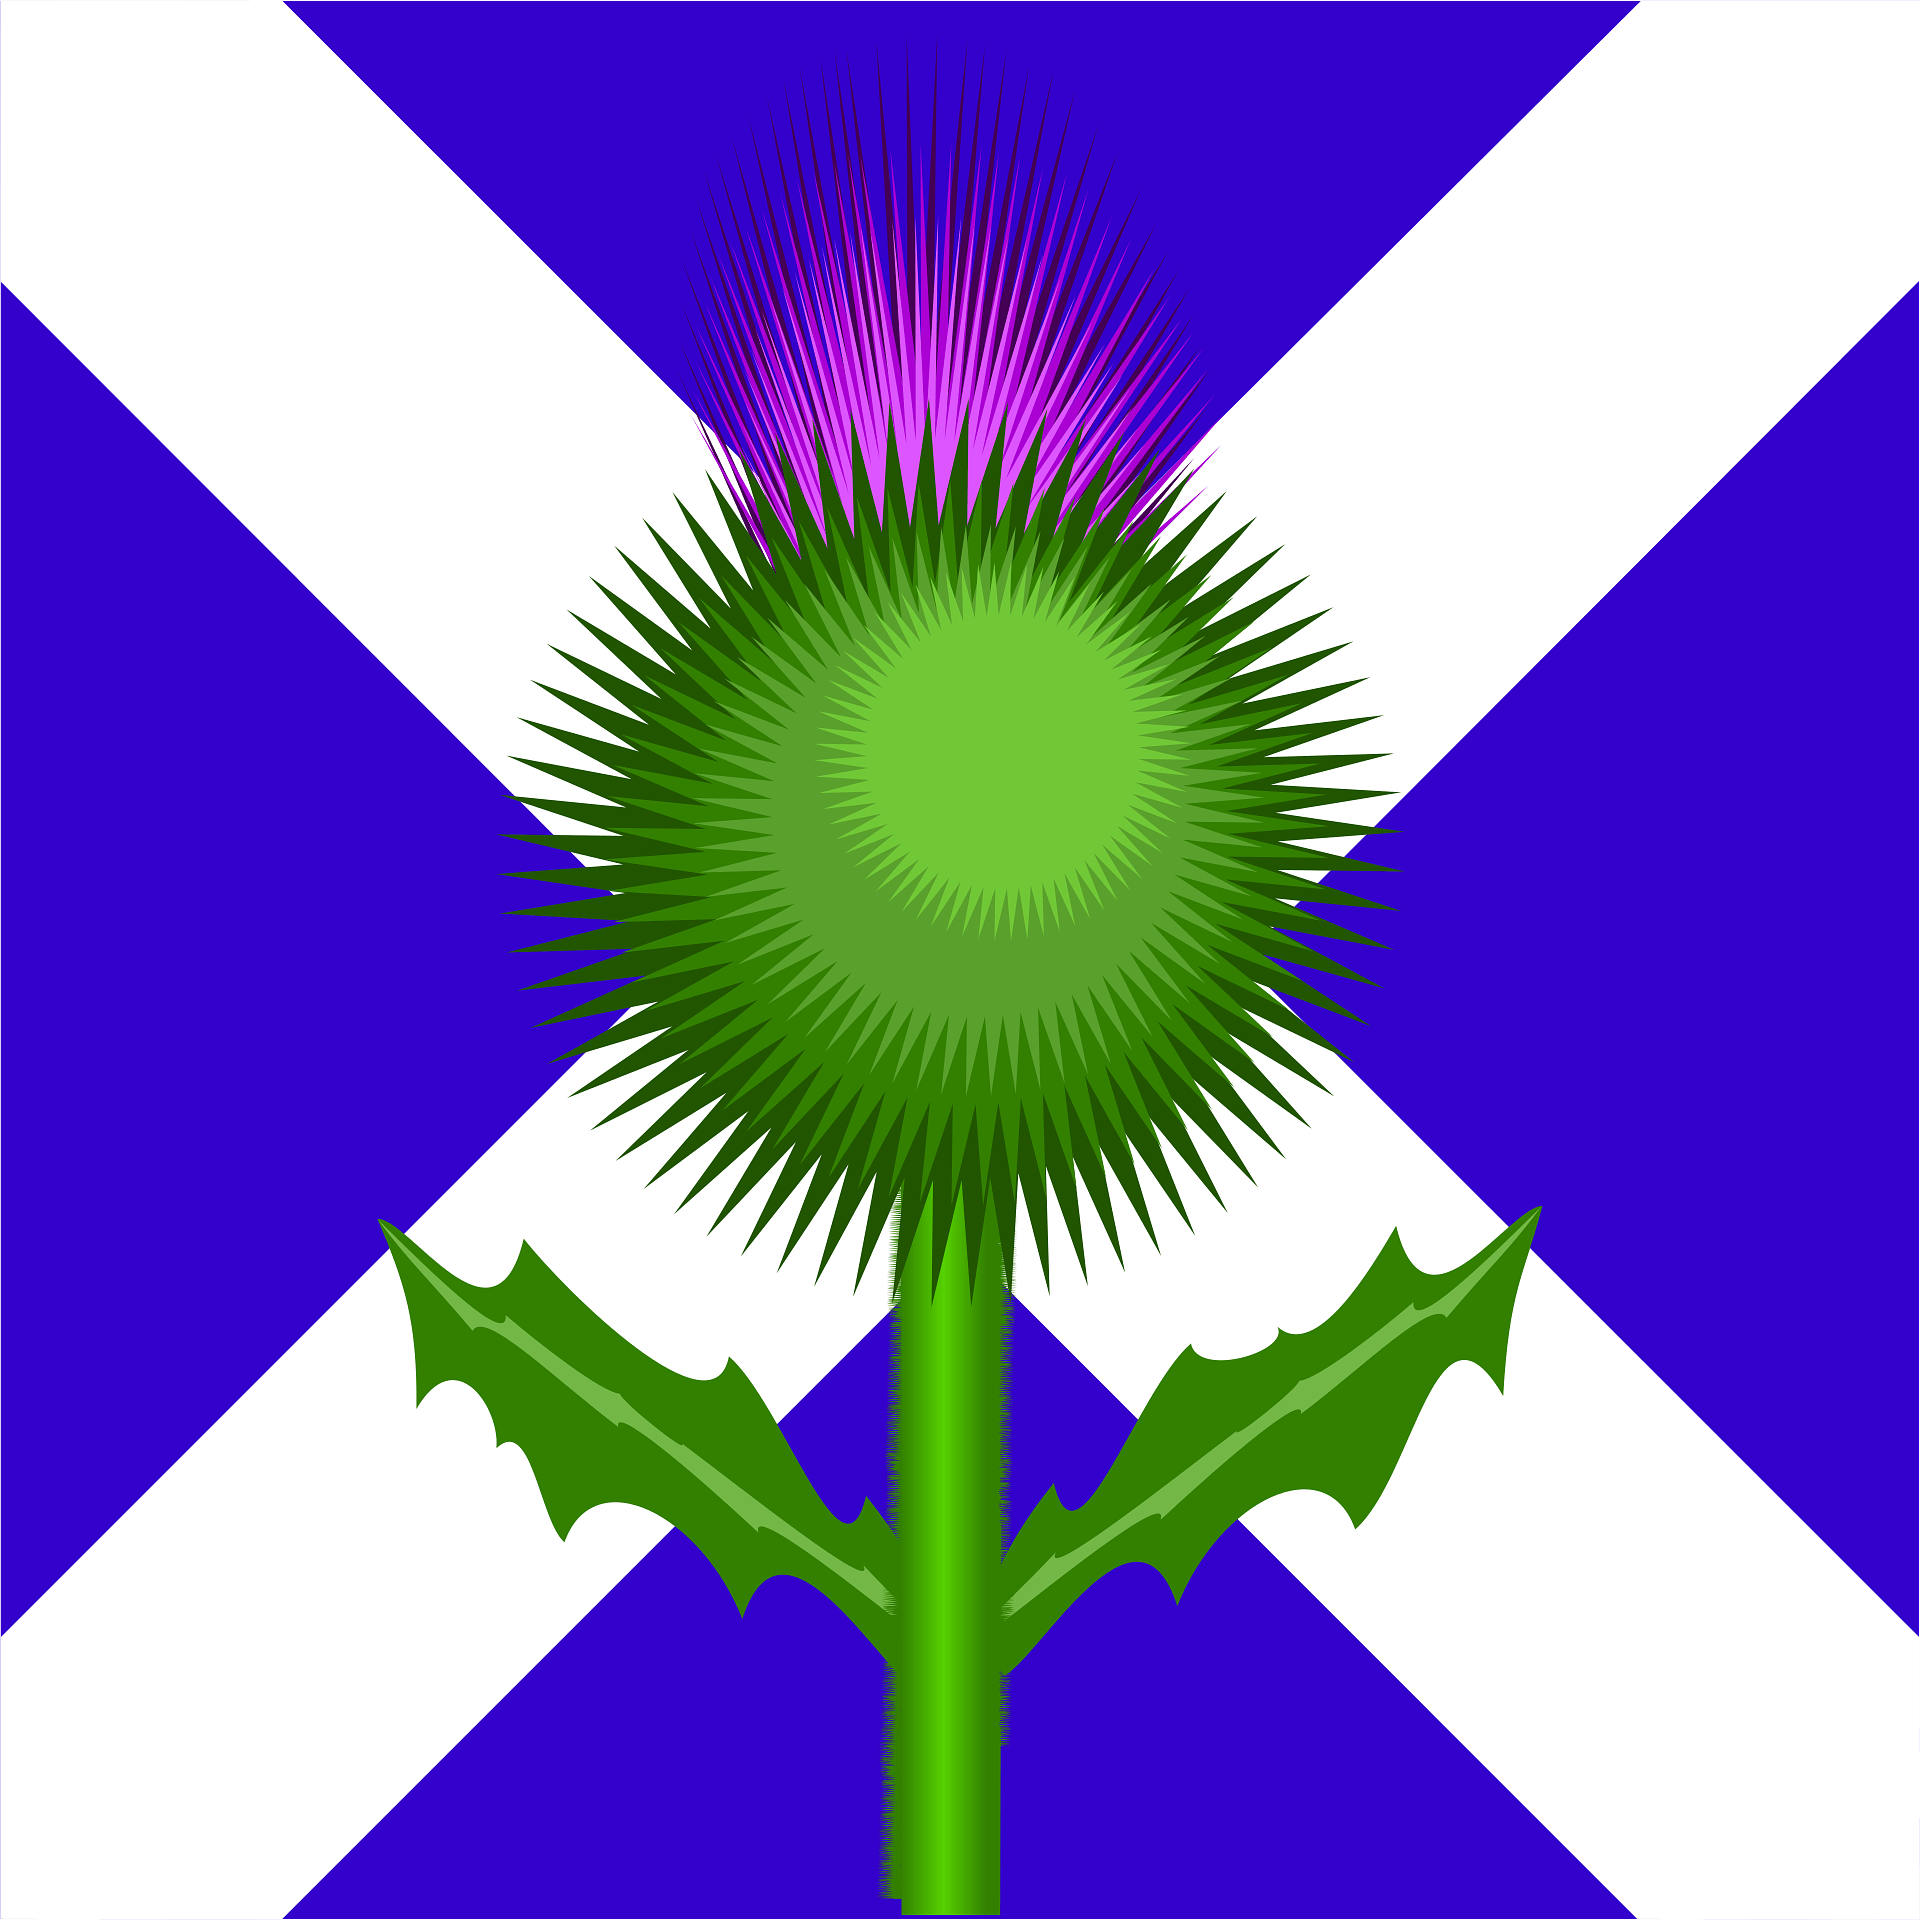 Чертополох символ Шотландии. Цветок чертополоха символ Шотландии. Шотландия флаг с чертополохом. Чертополох растение Шотландии. Scotland plant symbol